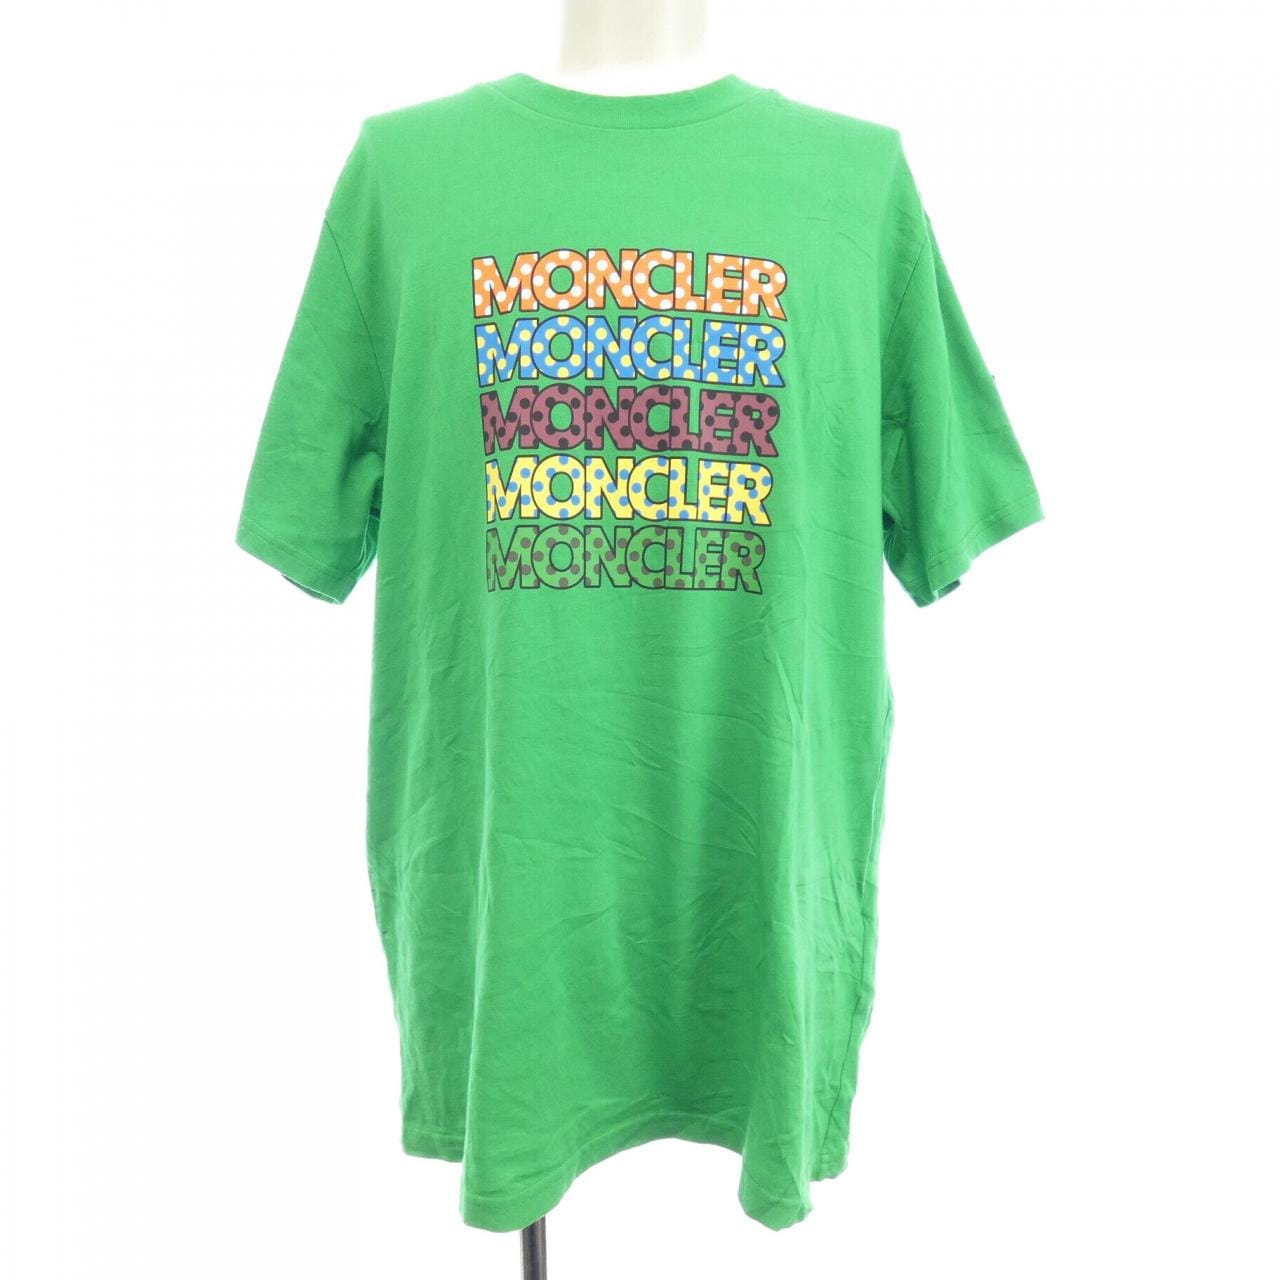 MONCLER モンクレール ジーニアス GENIUS Tシャツトップス